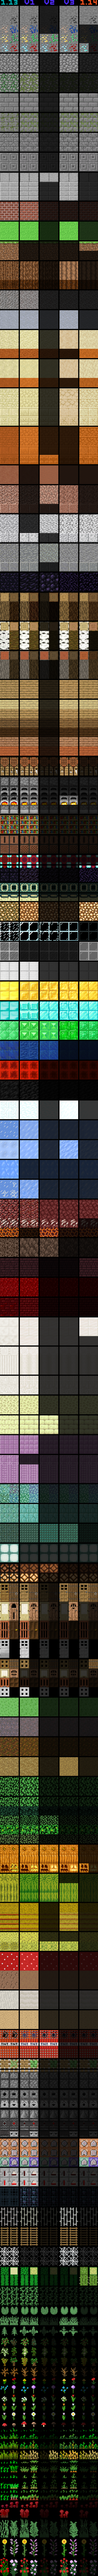 Minecraft 1 14 1 13 Texture Comparison